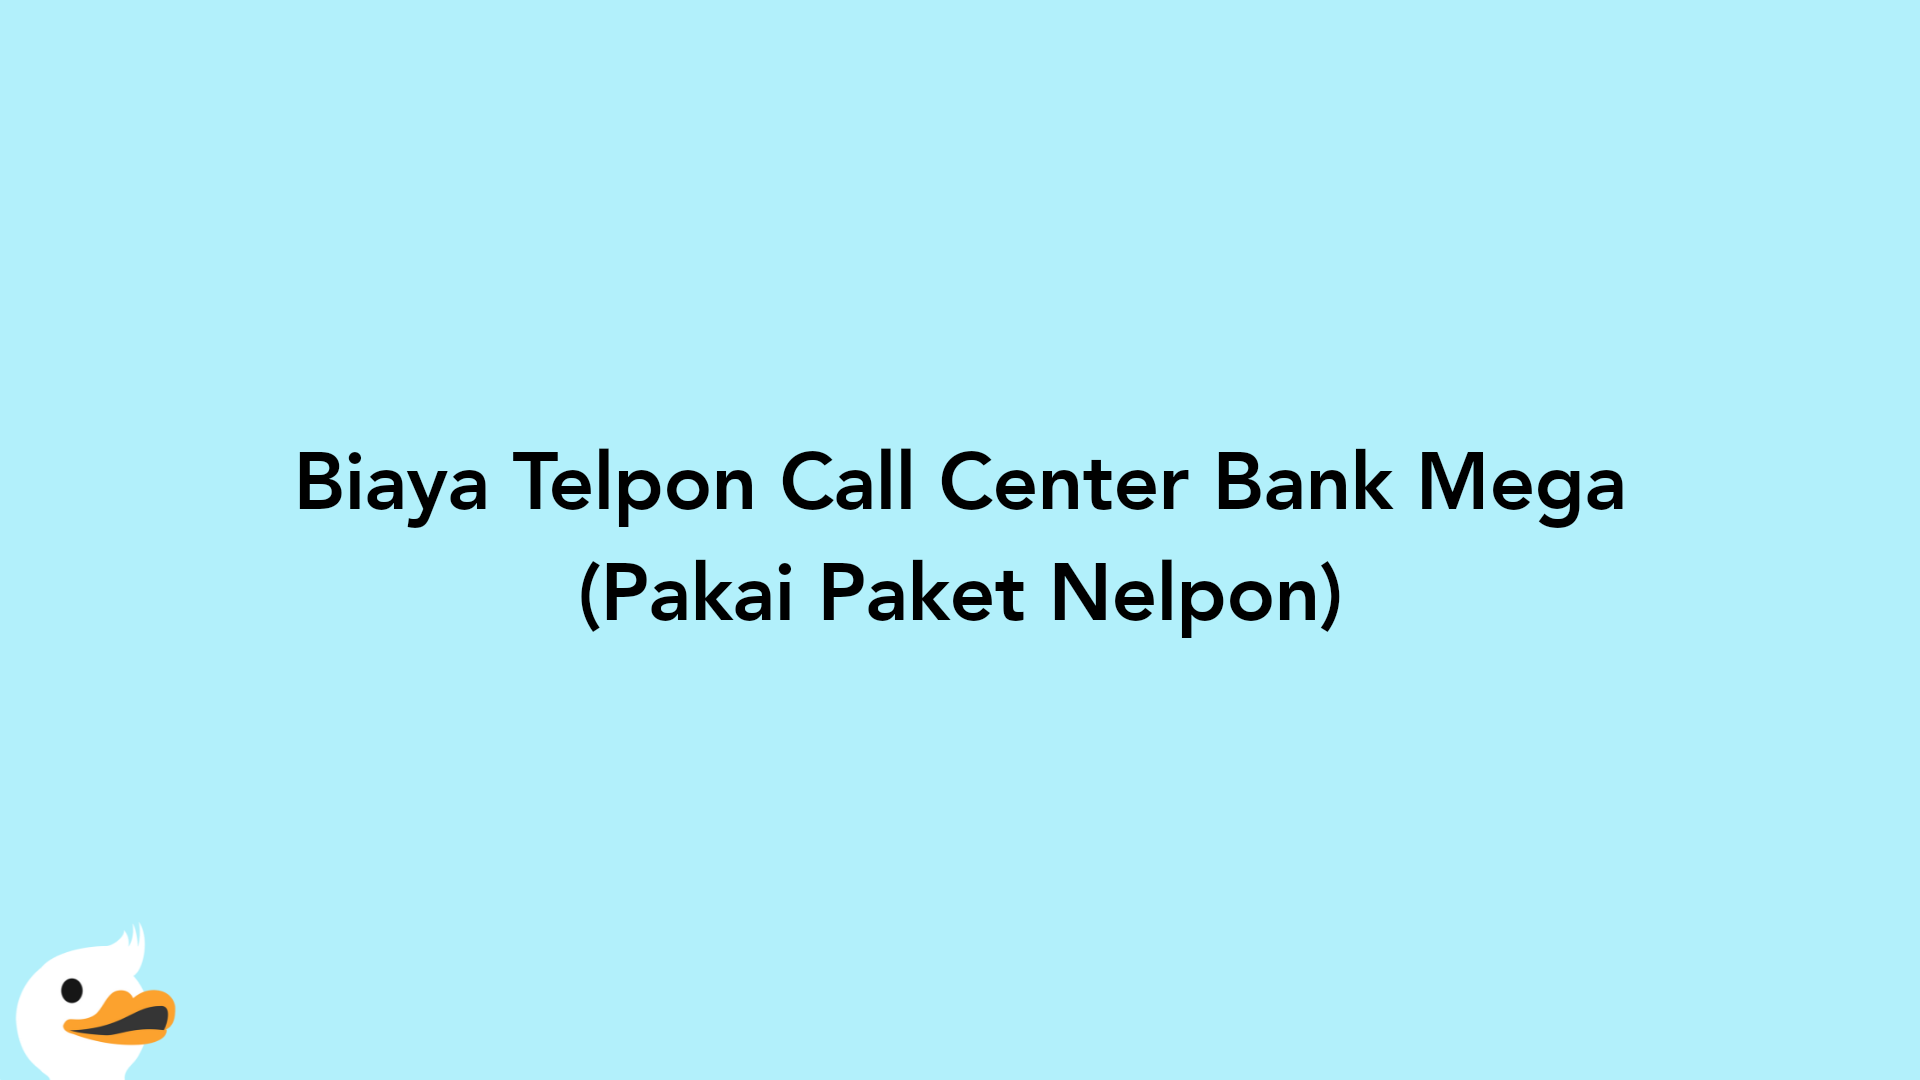 Biaya Telpon Call Center Bank Mega (Pakai Paket Nelpon)